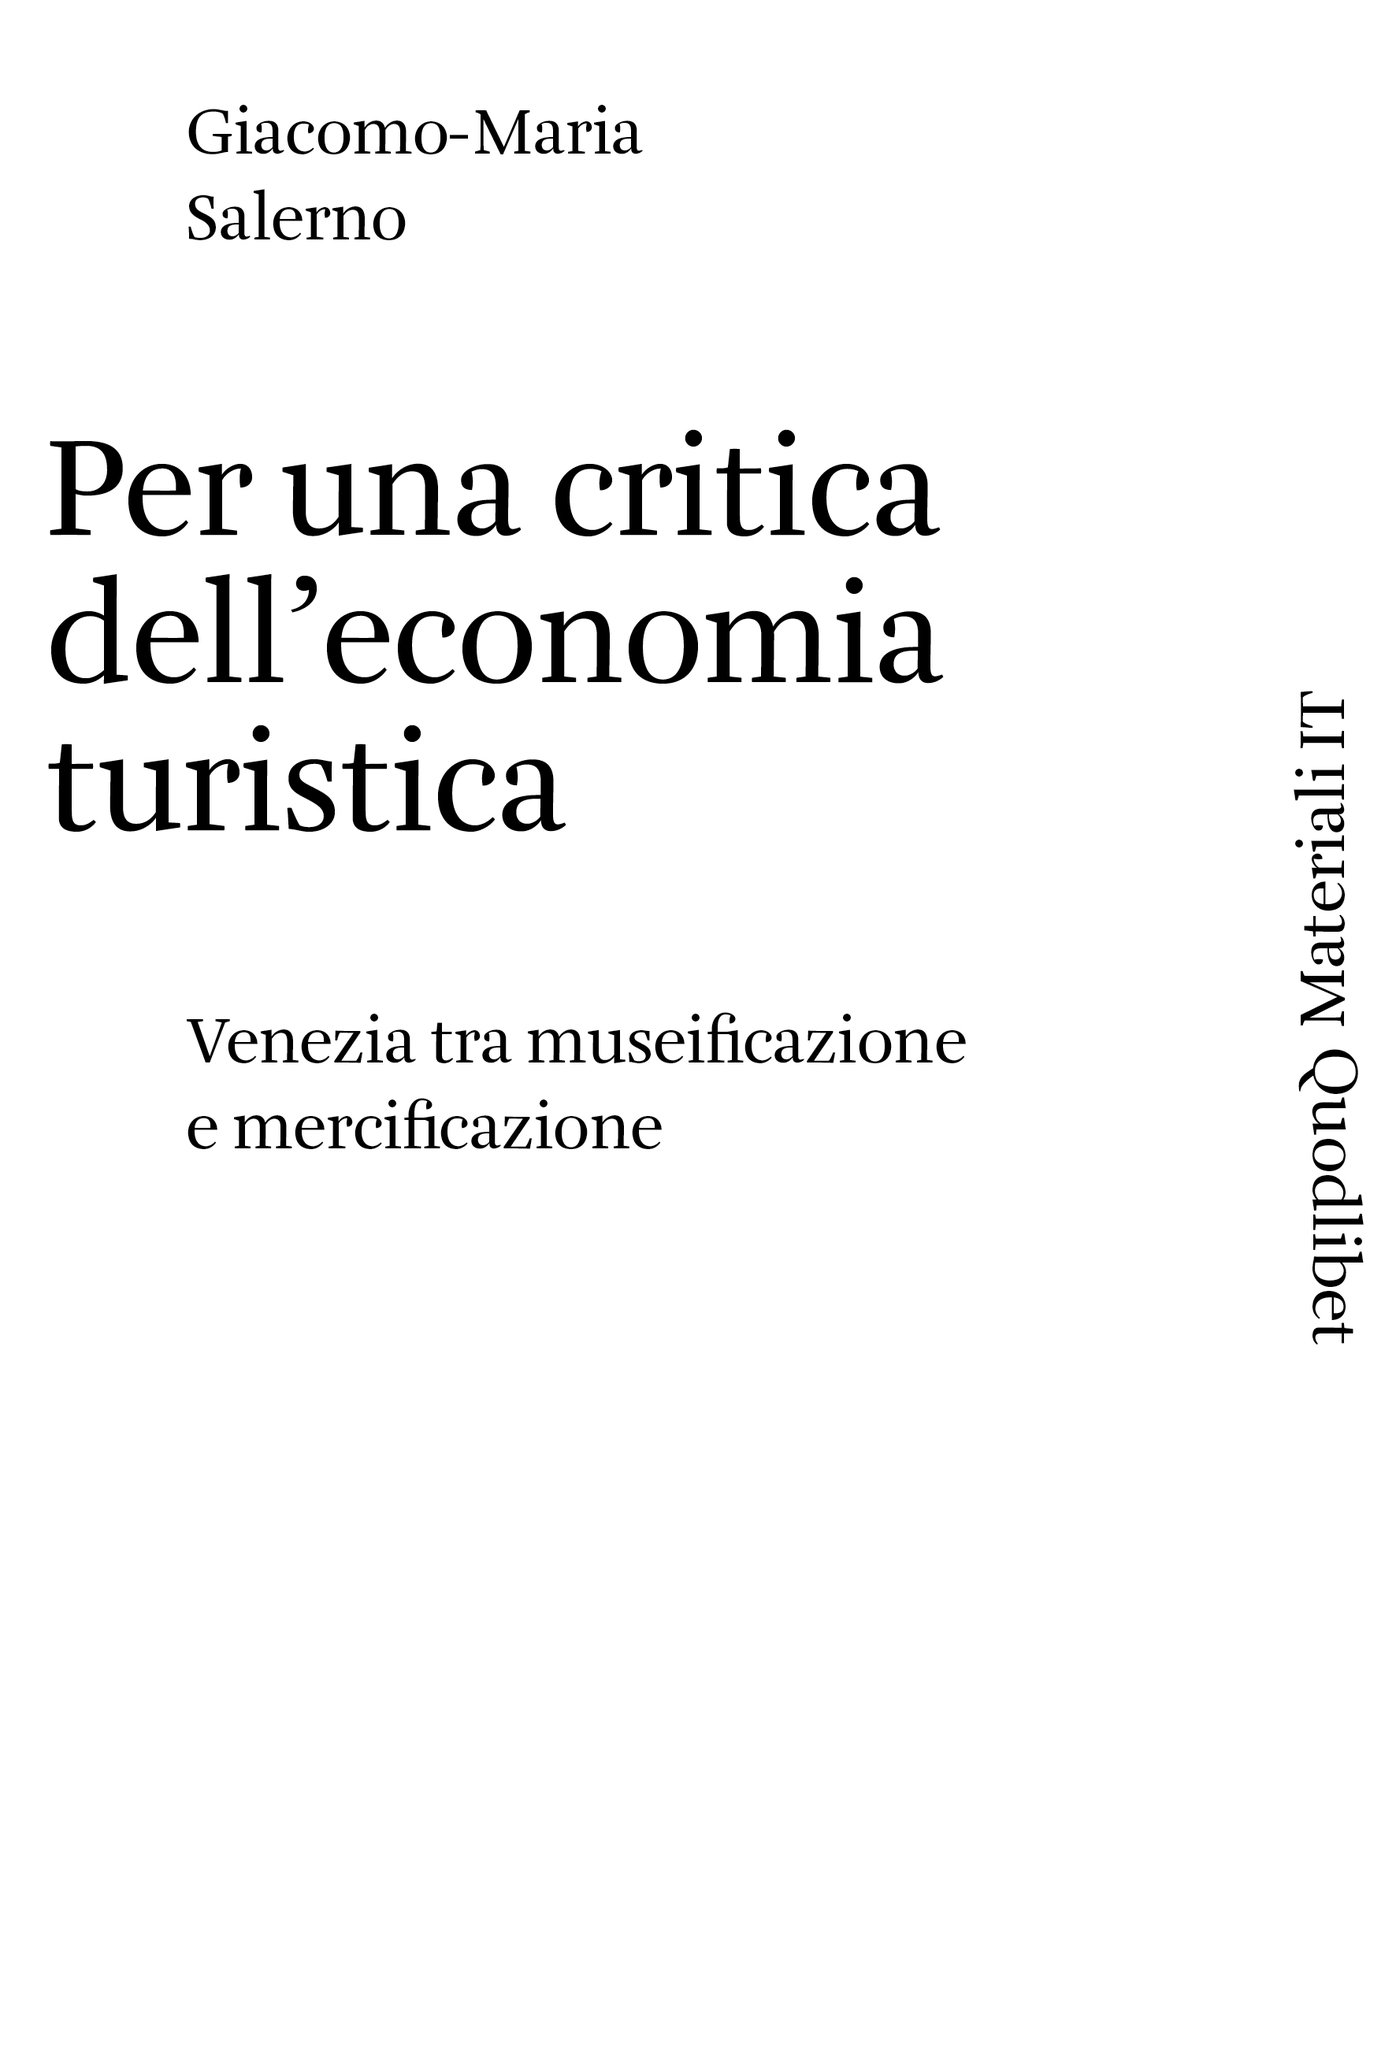 Giacomo Maria Salerno, Per una critica dell'economia turistica, Quodlibet, 2020.